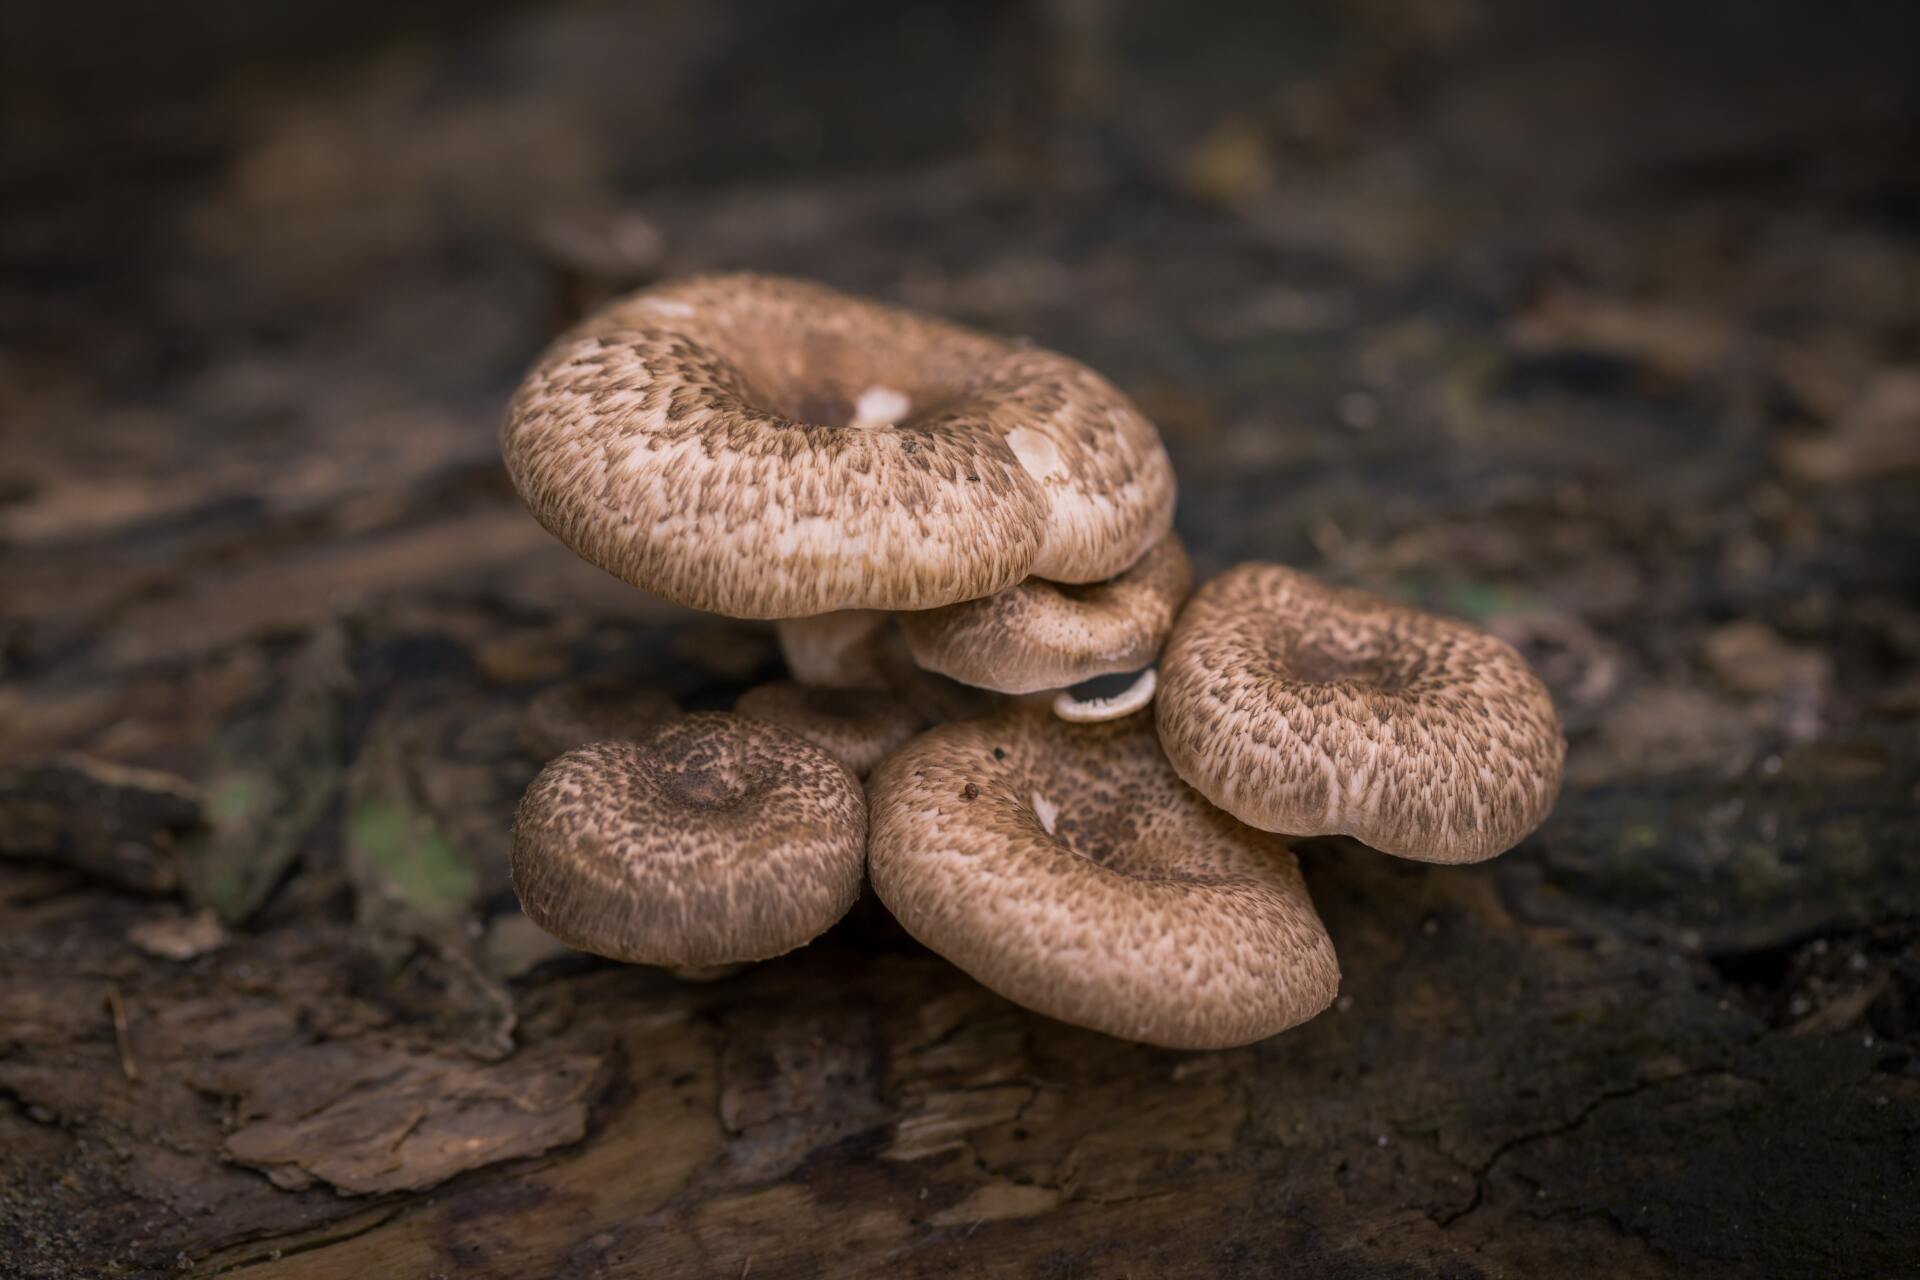 shiitake mushrooms growing on a log